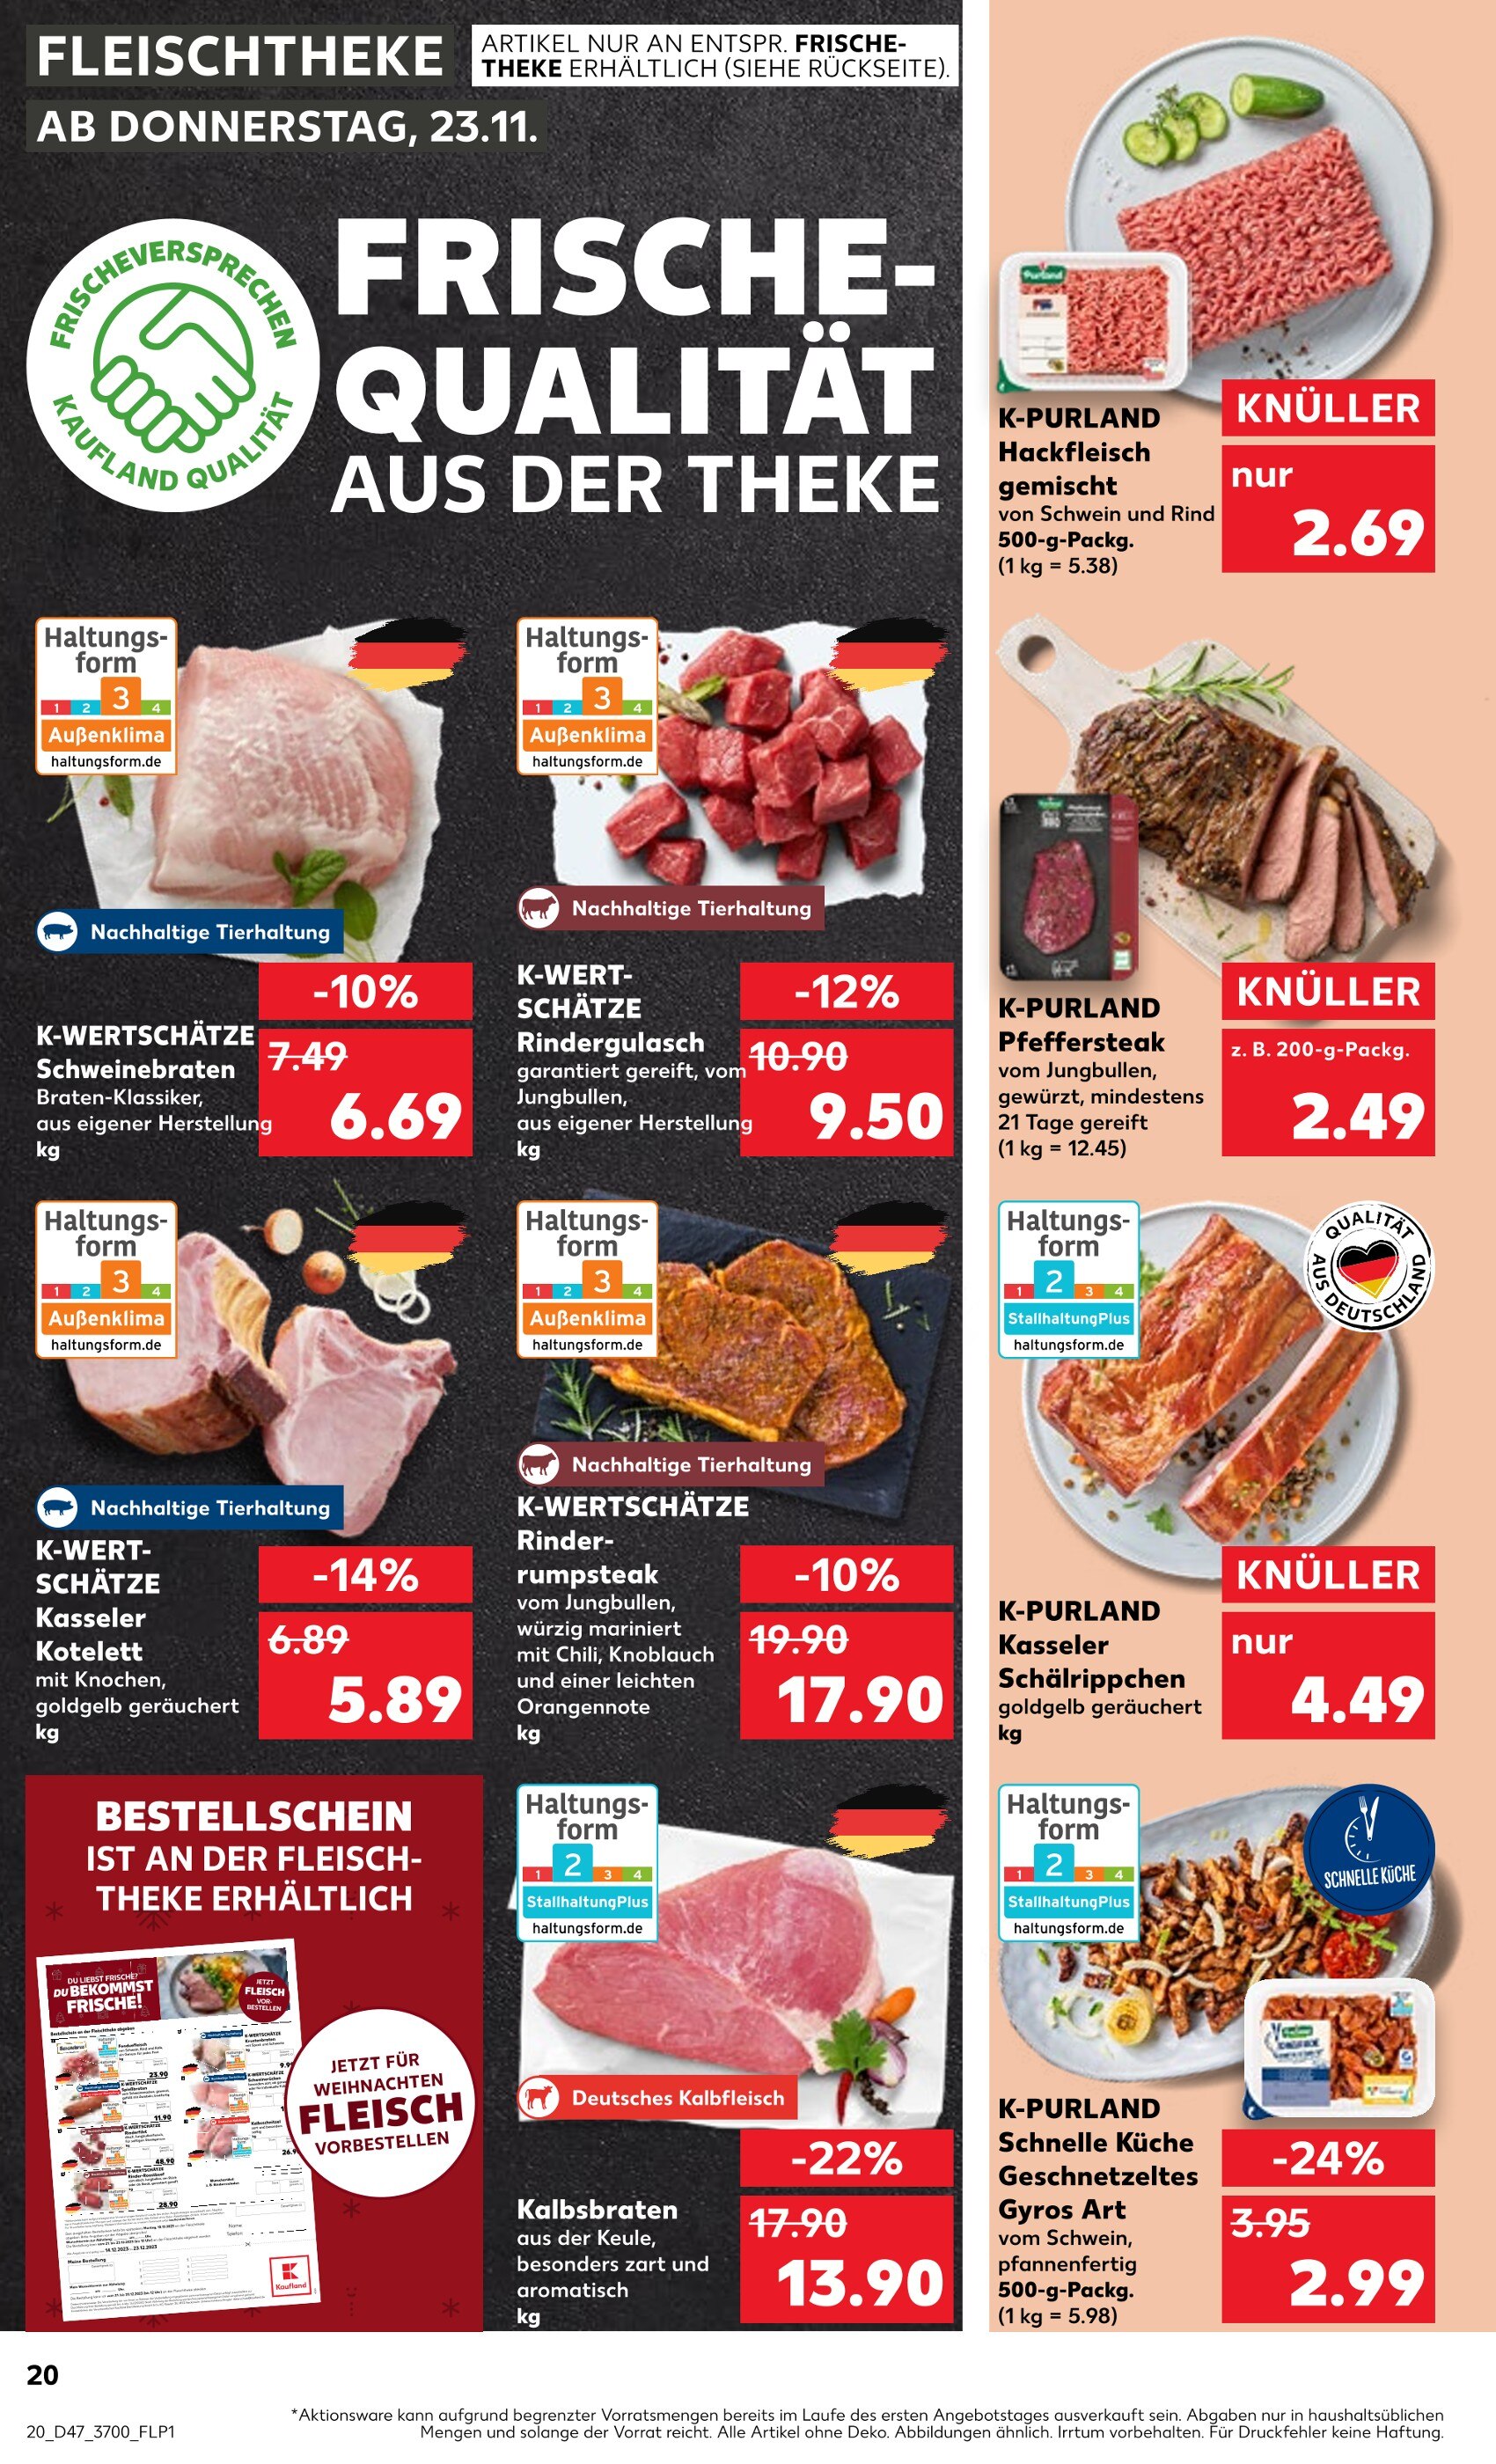 Steak jetzt kaufen! Angebote in günstig 🔥 - Rostock